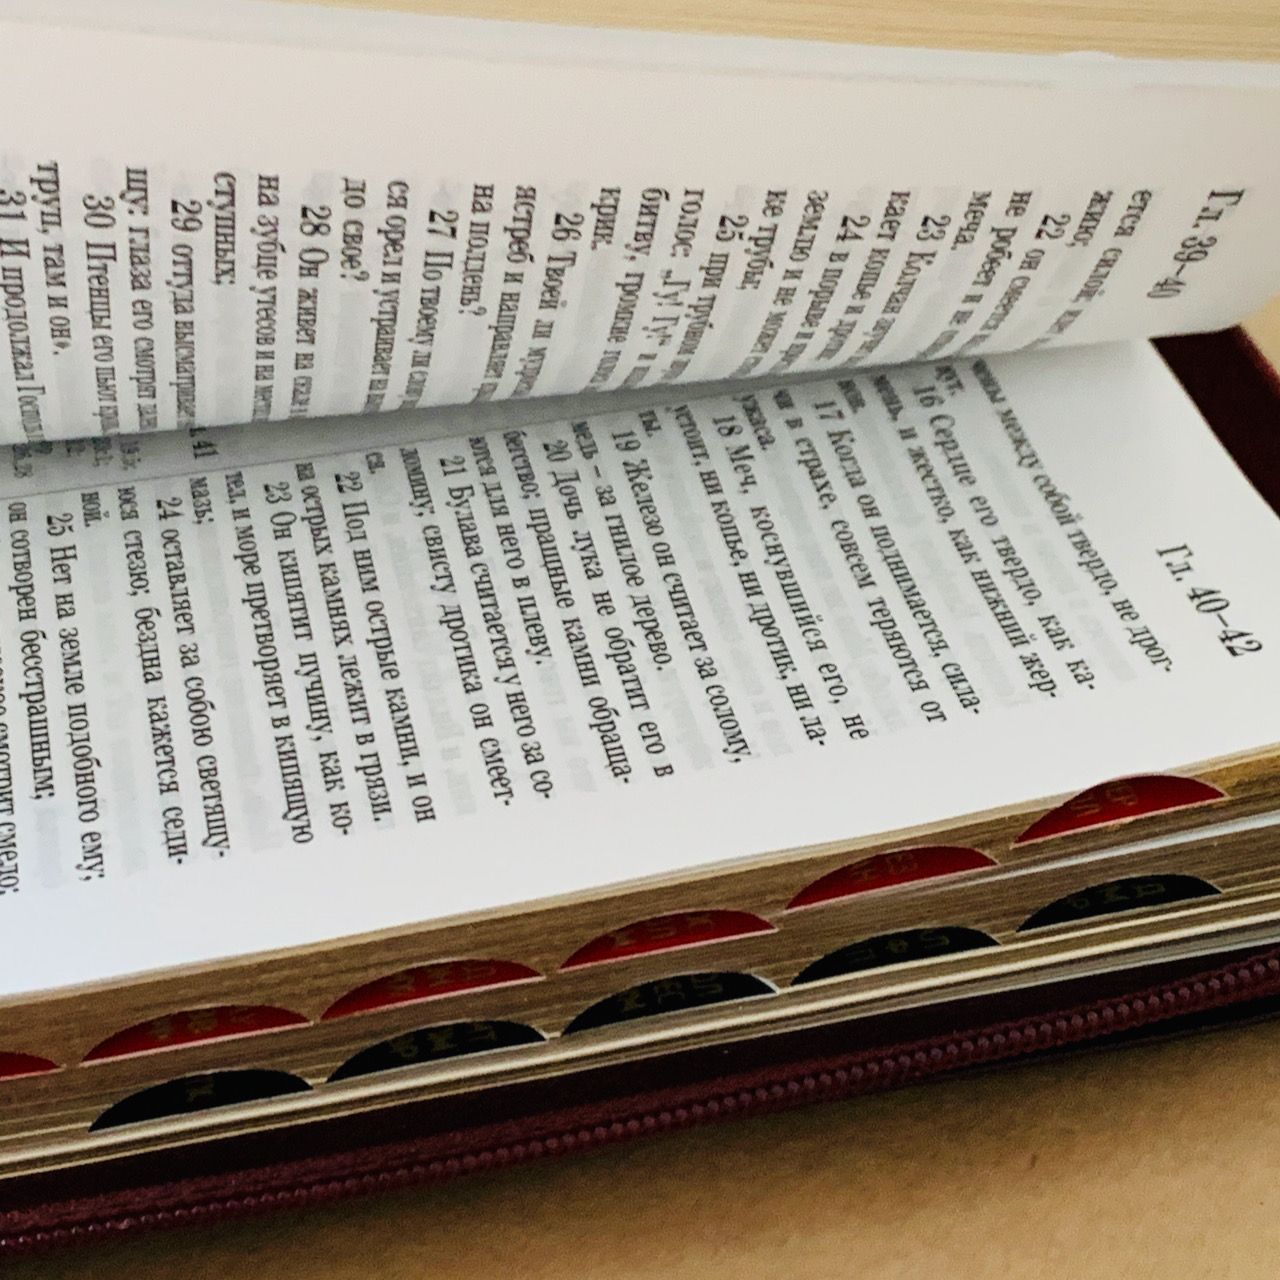 Библия 077zti формат, переплет из натуральной кожи на молнии с индексами, надпись золотом "Библия", цвет бордо металлик, золотой срез, большой формат, 180*260 мм, цветные карты, крупный шрифт